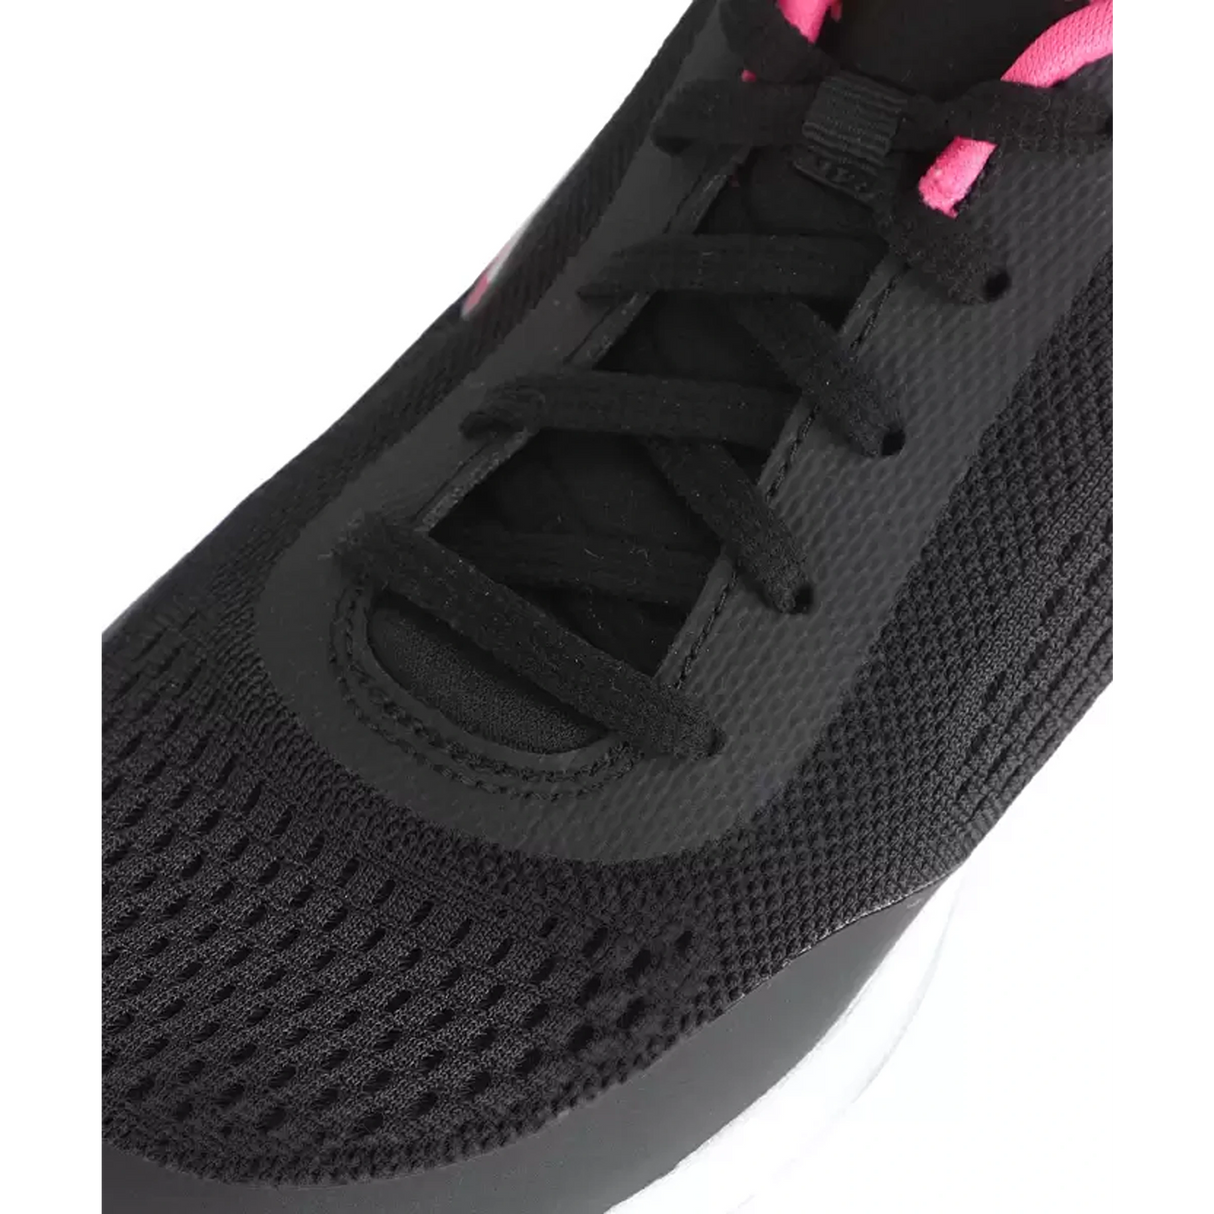 SKECHERS GO WALK 5 - EXQUSITE Walking Shoes For Women  (Black) (15953-BKPK)